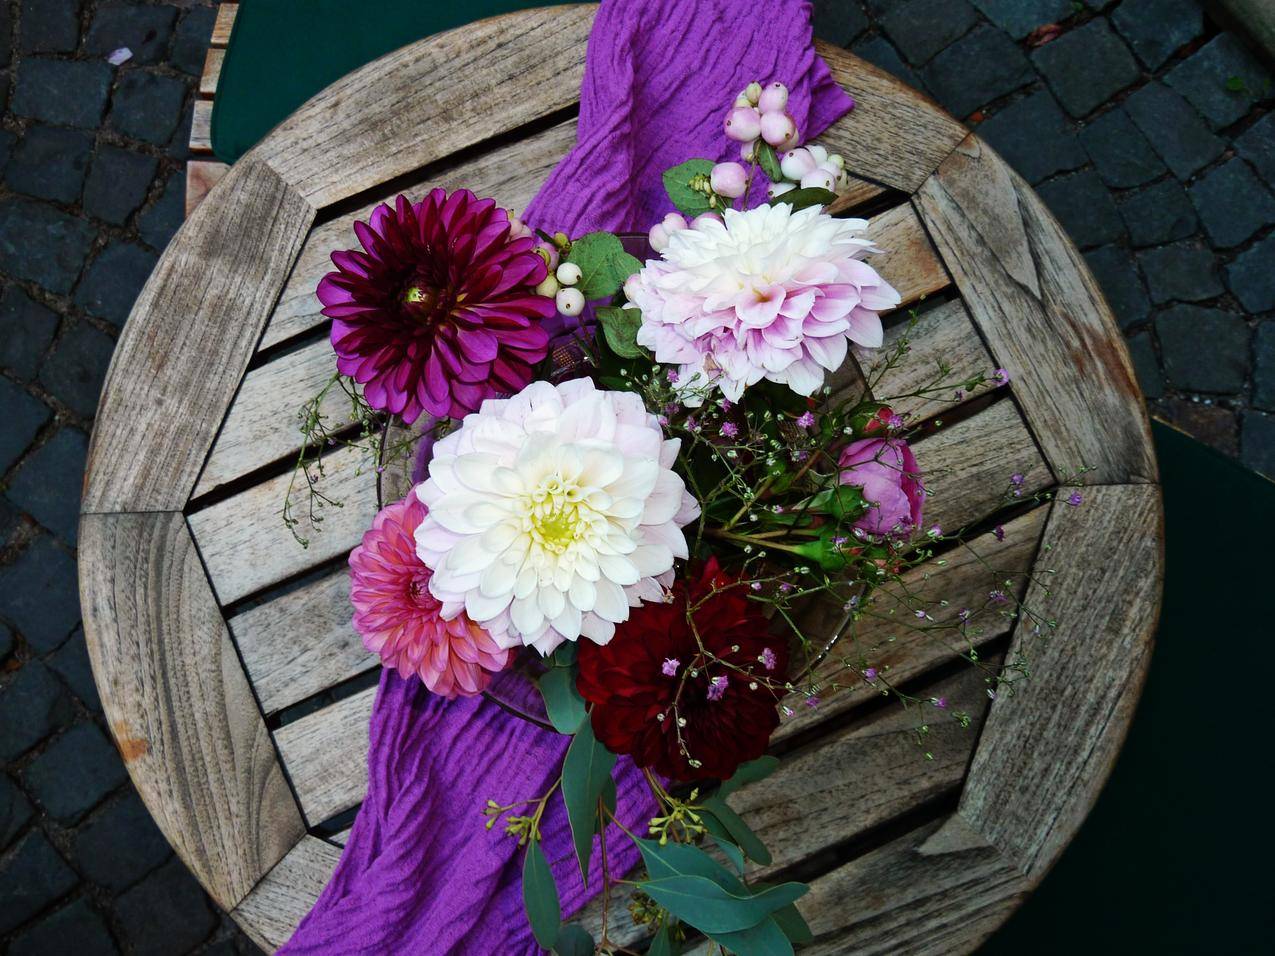 cc0可商用的花卉图片,夏天,紫色,花瓣